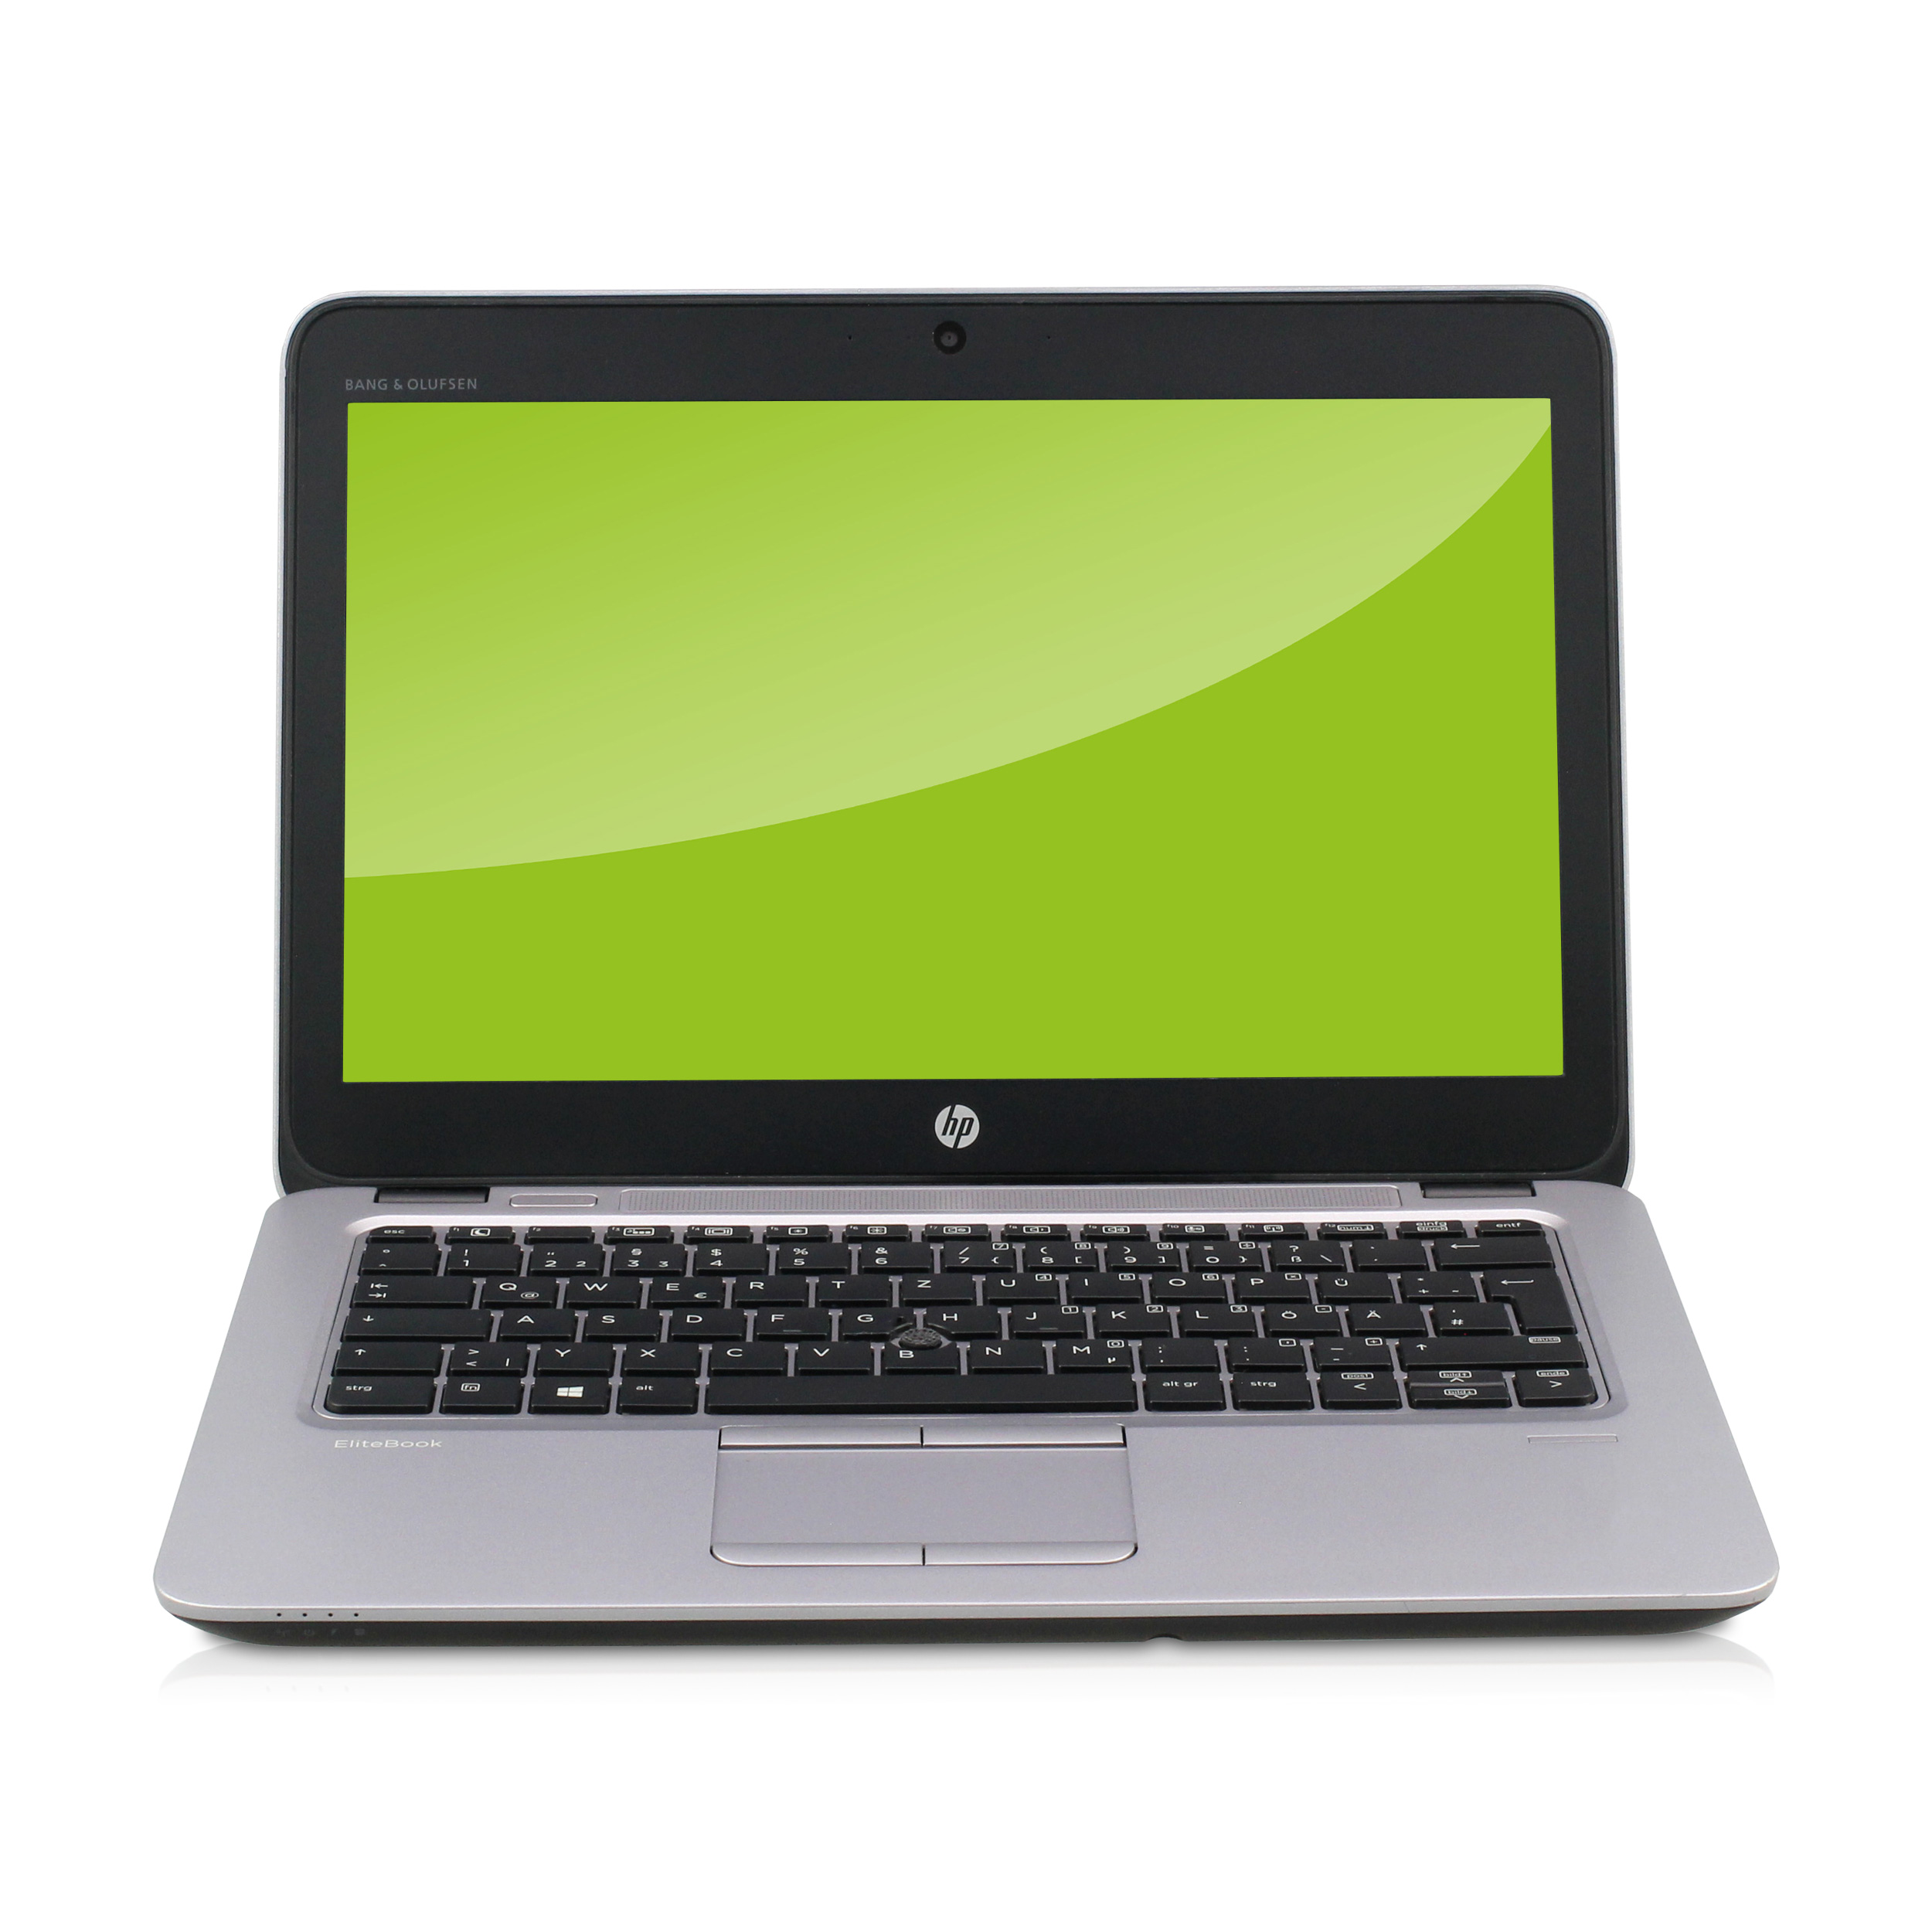 HP EliteBook 820 G3 Intel Core i5-6200U 2,30GHz 8GB 256GB SSD Win 10 Pro